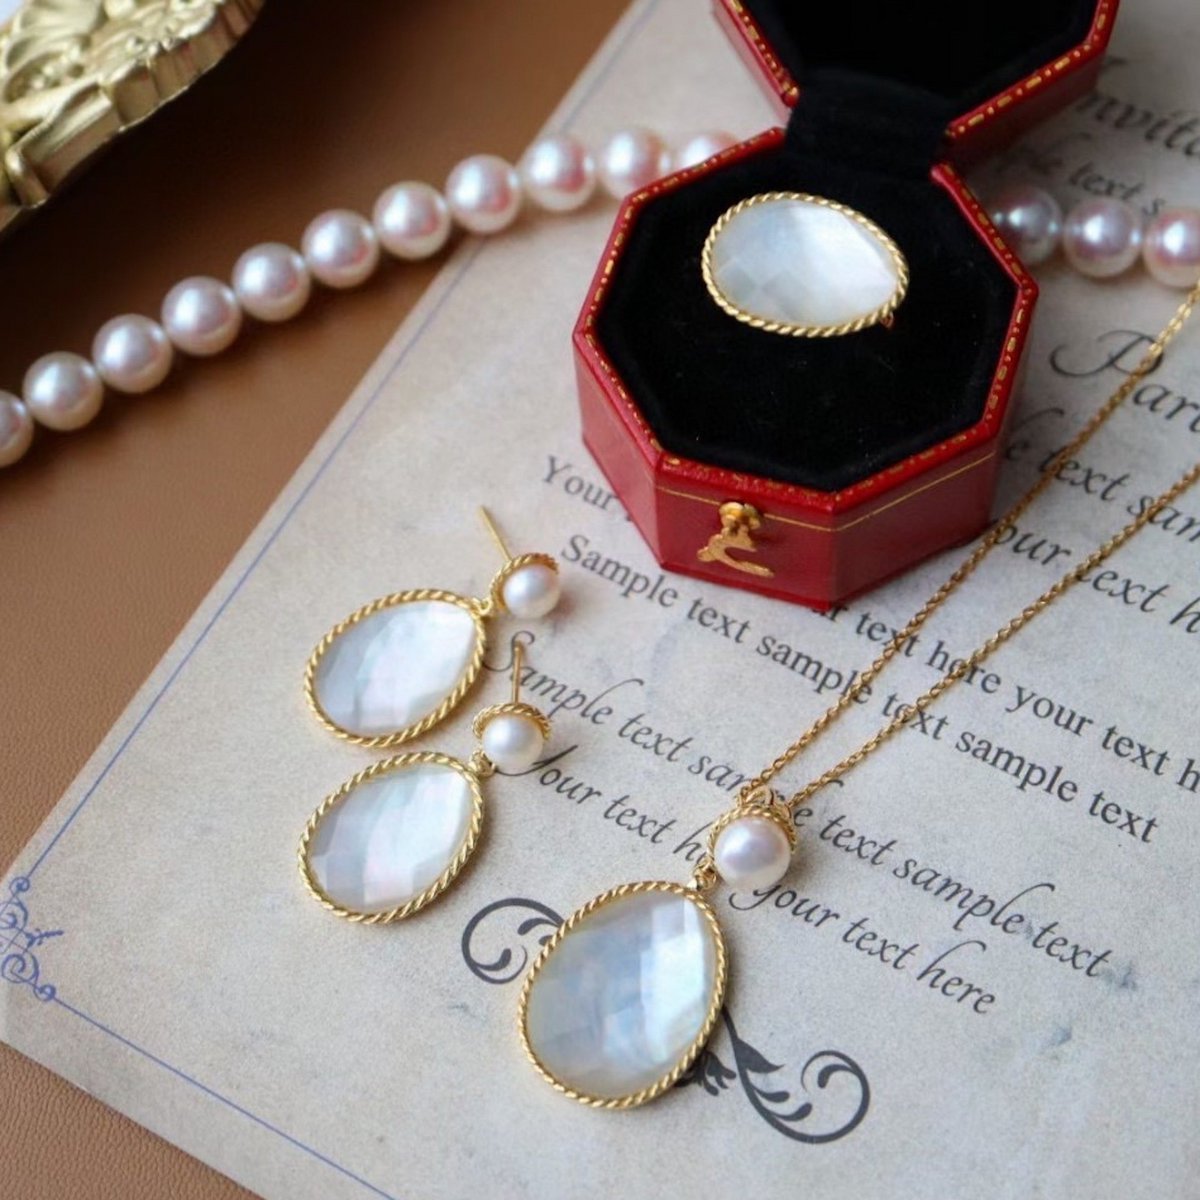 Parelmoer ovale gefacetteerde stenen sieradenset - goud vermeil - oorbellen & ketting & ring